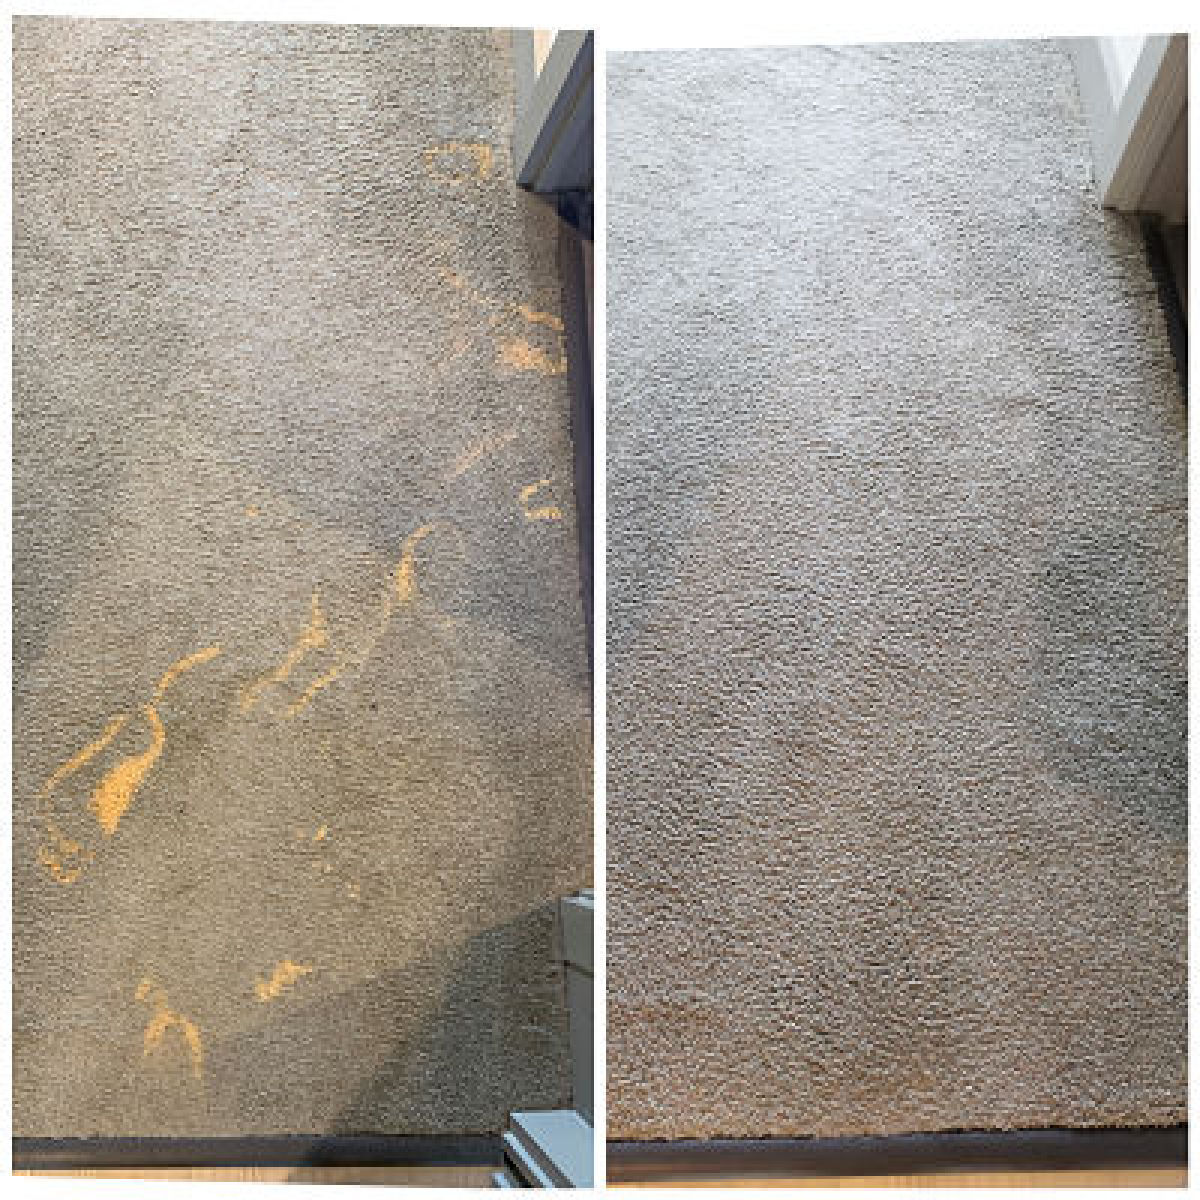 bleach stain repair carpet dyeing